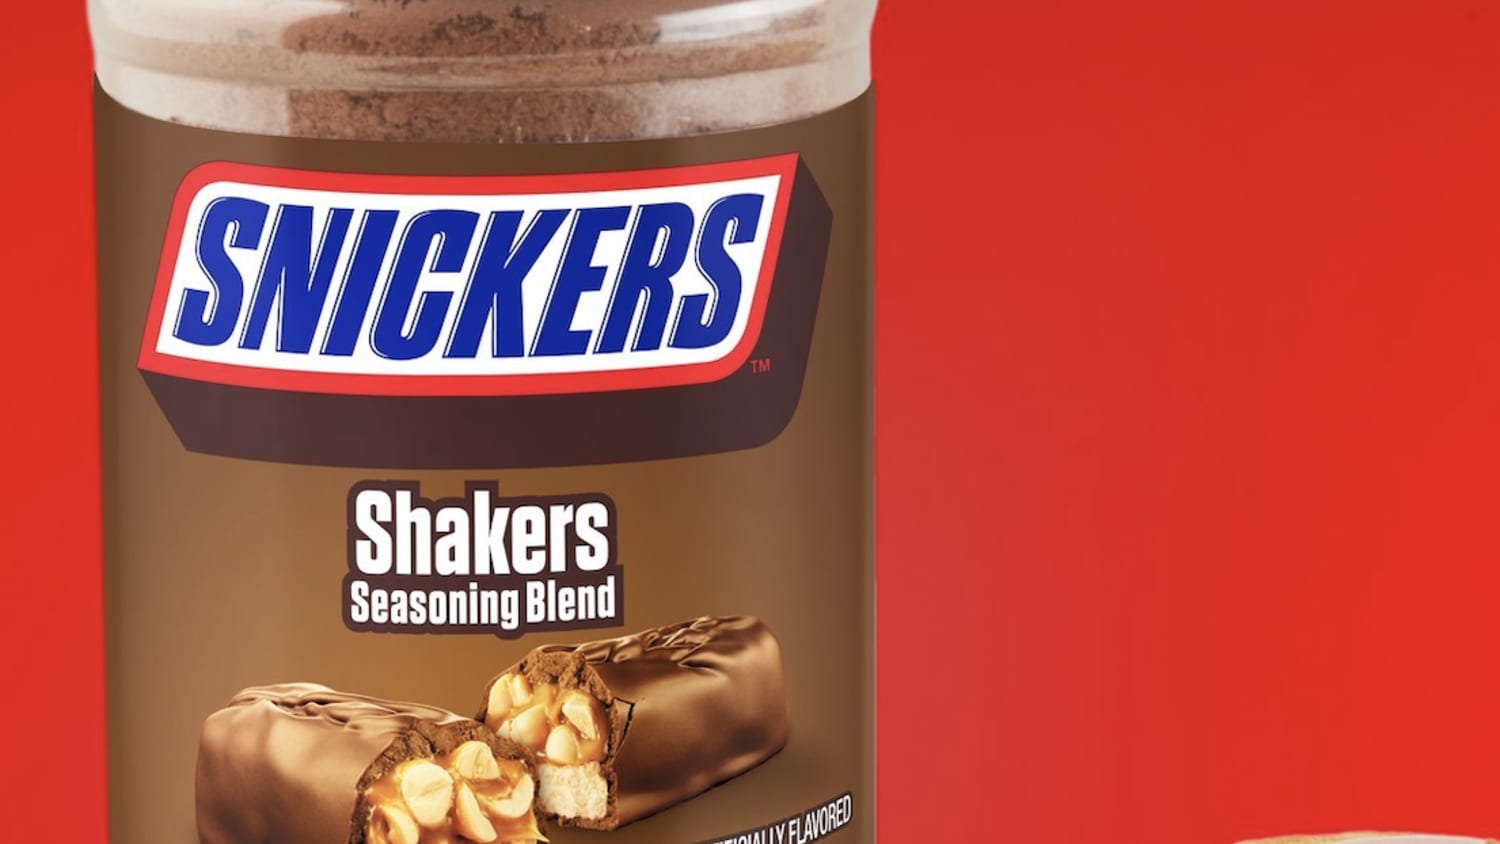 snickers shaker seasoning｜TikTok Search